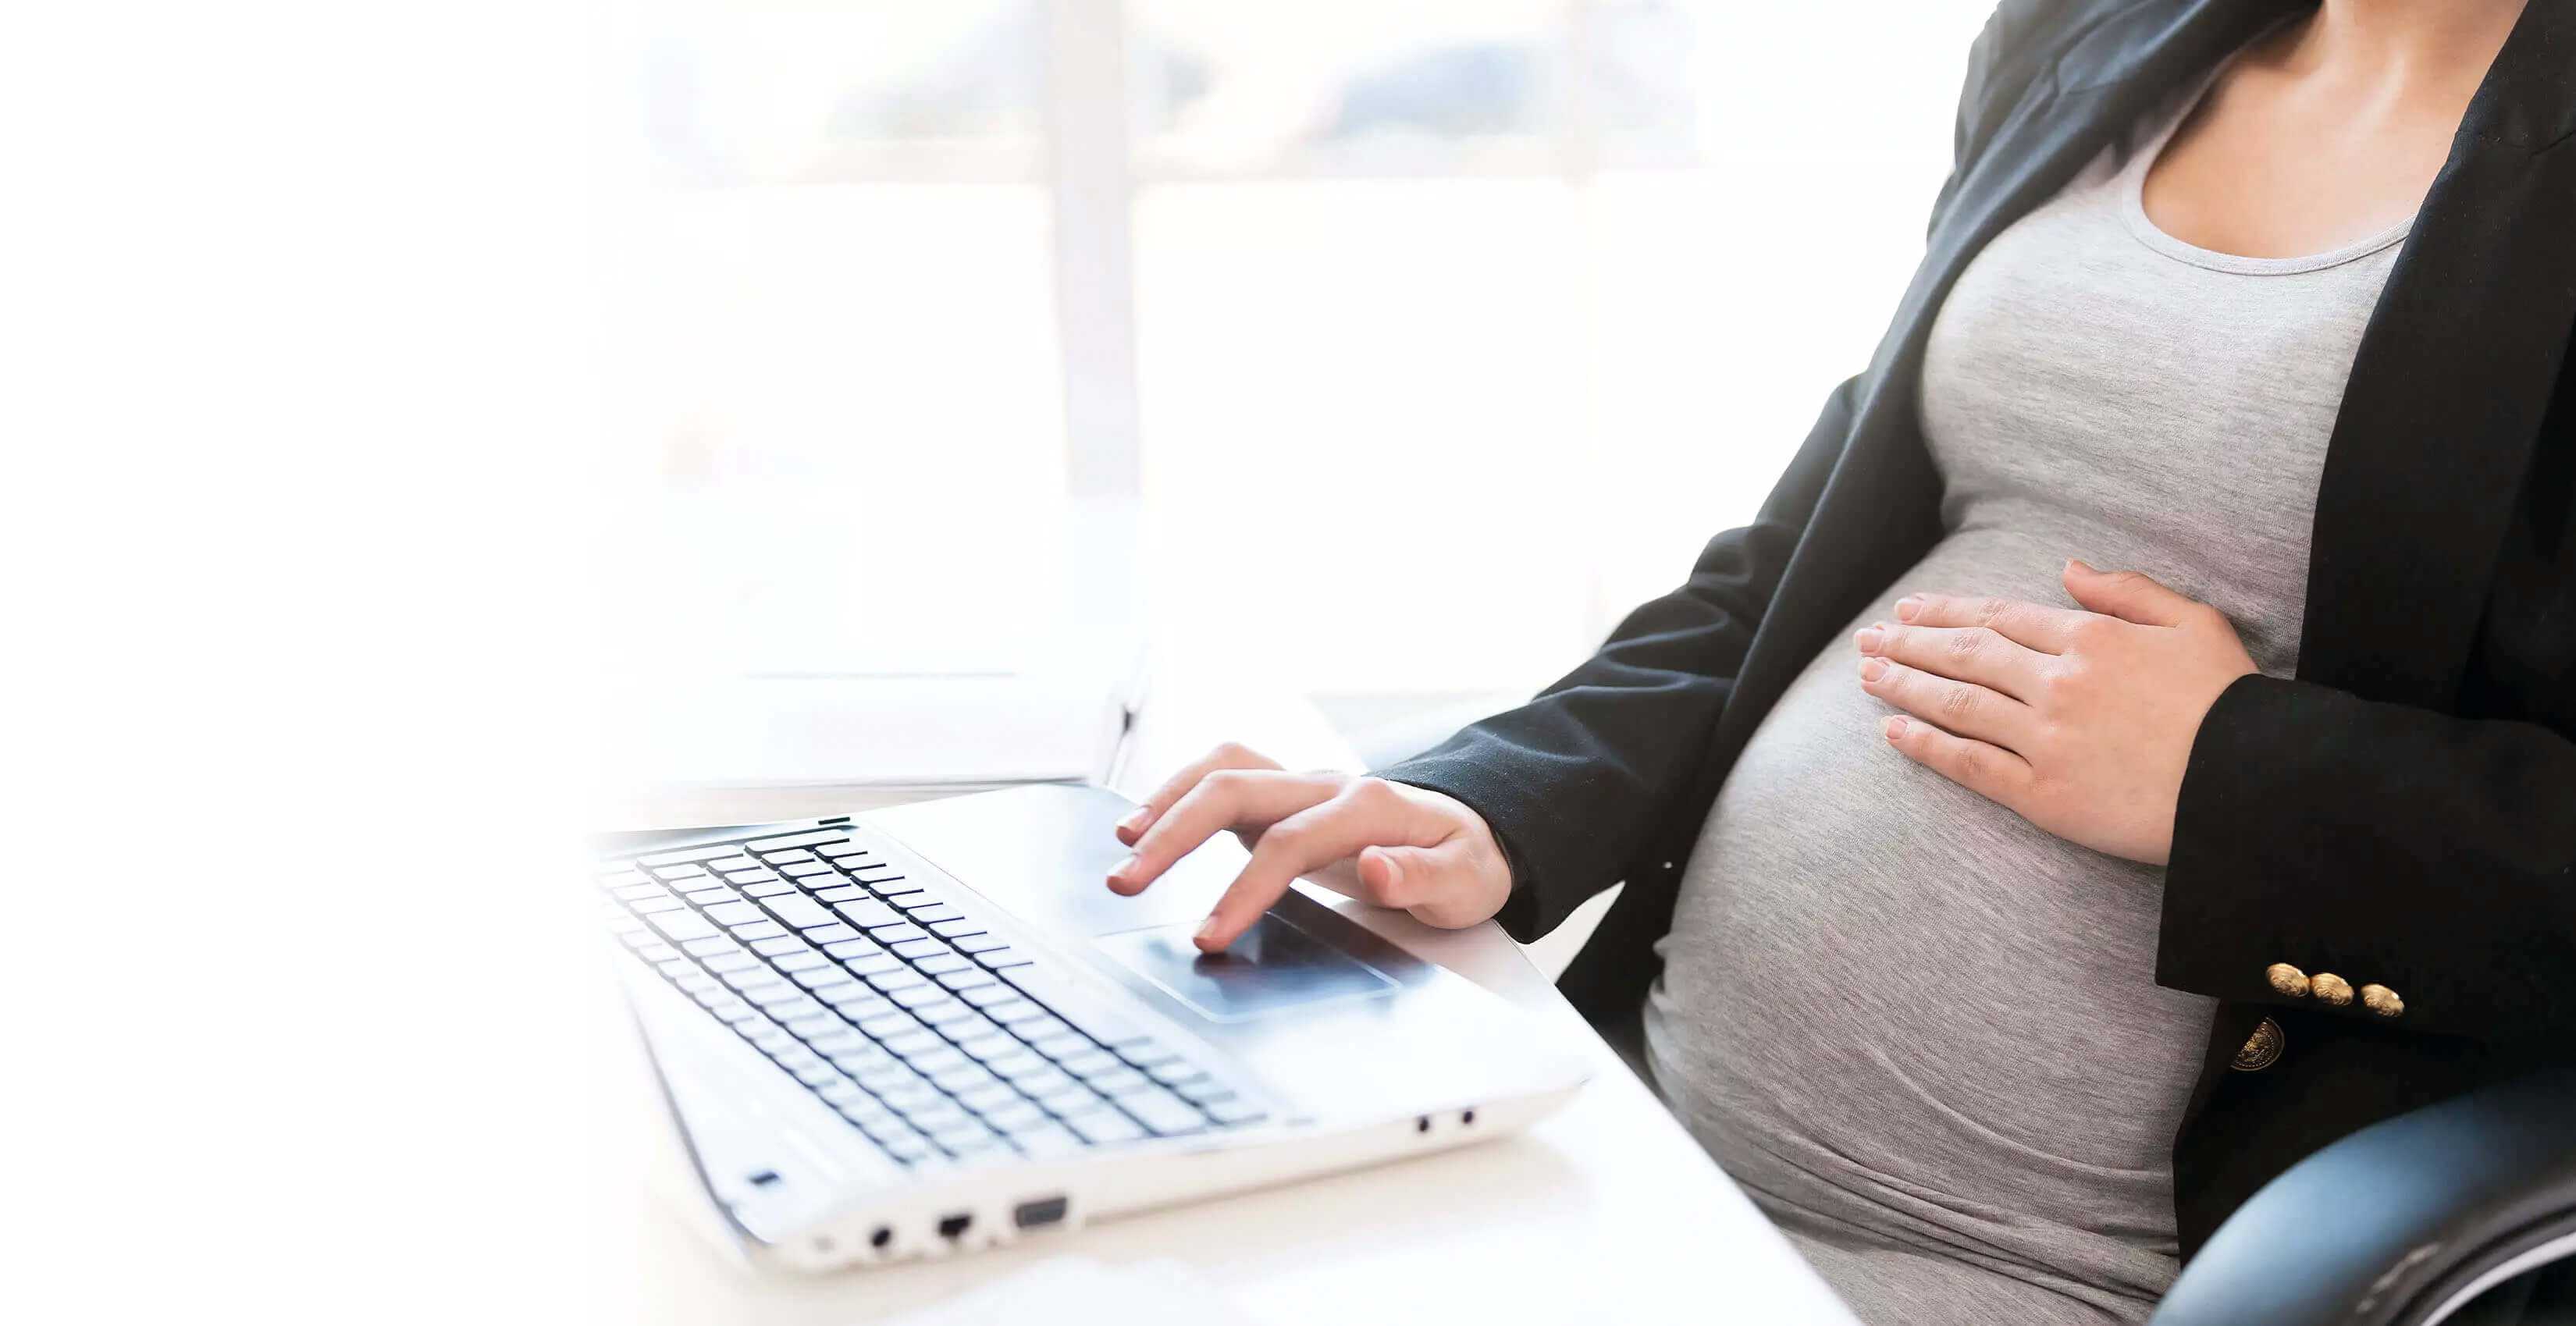 Mengatasi gejala kehamilan yang umum di tempat kerja